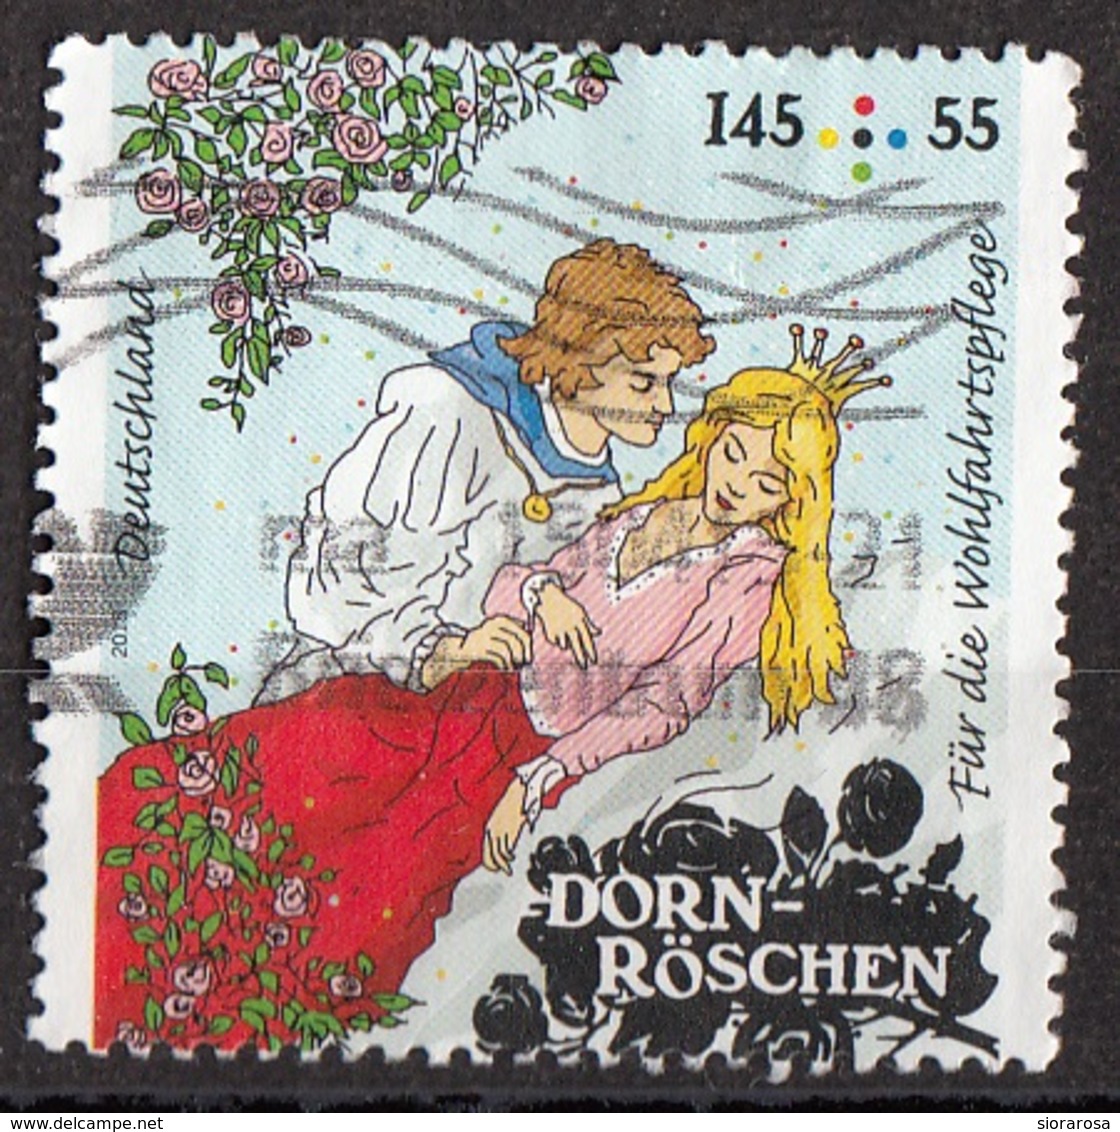 Germania 2015 Mi. 3134 Favole : DORN-ROSCHEN - Bella Addormentata Grimm Used Deutschland Germany - Fiabe, Racconti Popolari & Leggende